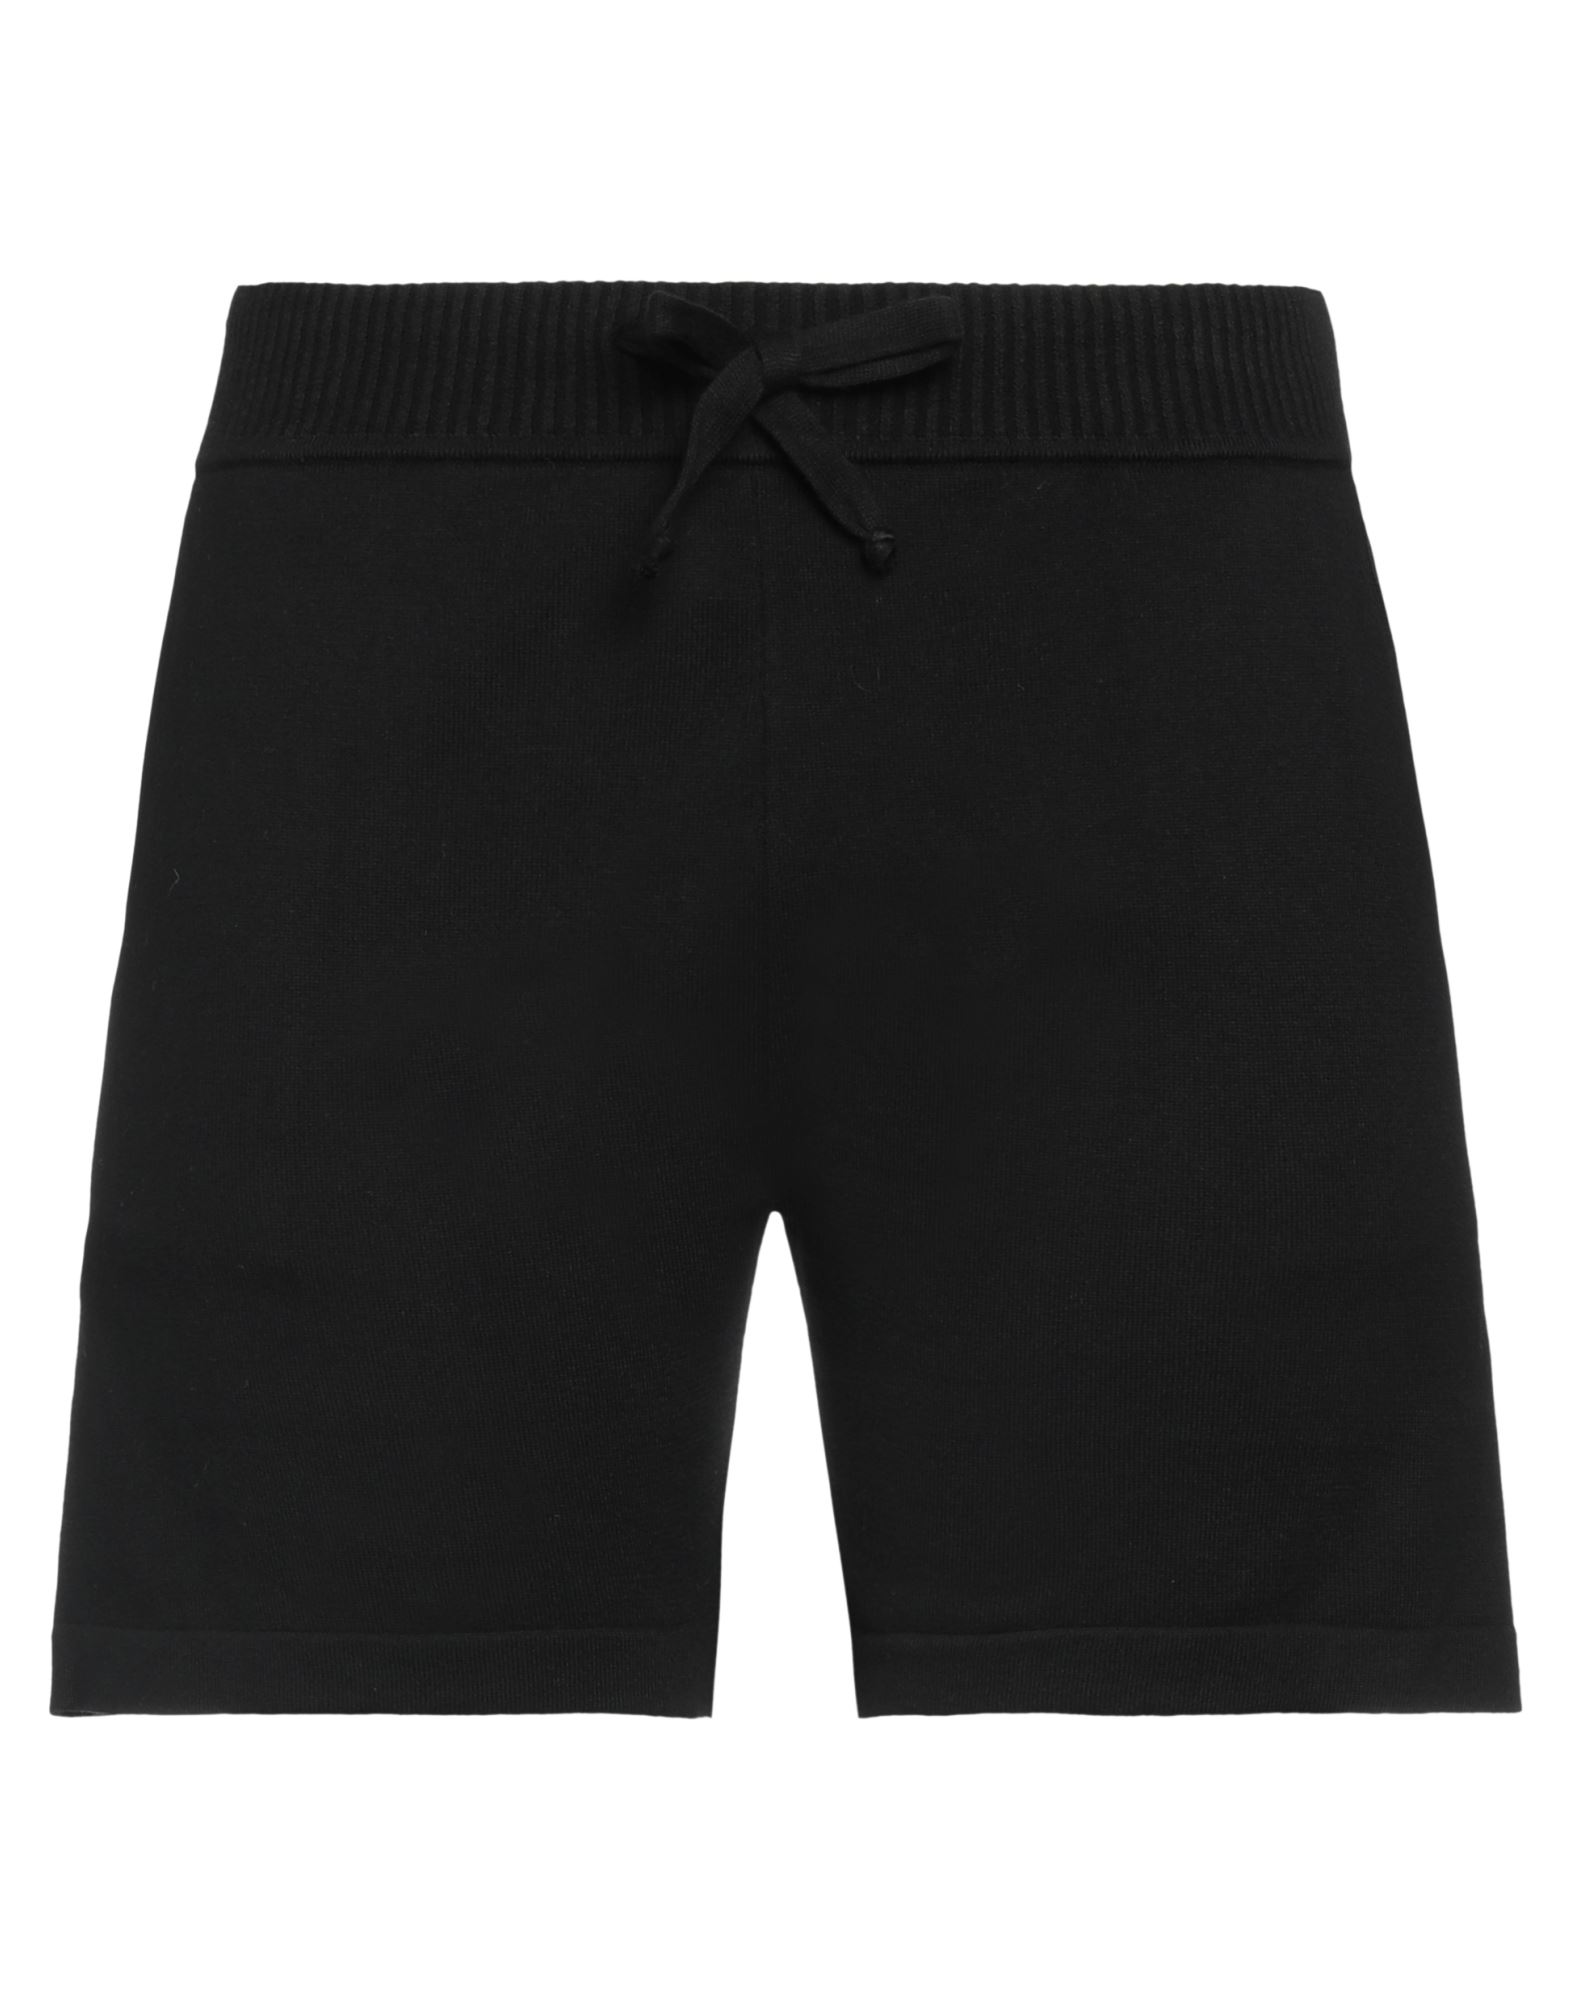 P.a.r.o.s.h P. A.r. O.s. H. Woman Shorts & Bermuda Shorts Black Size M Cotton